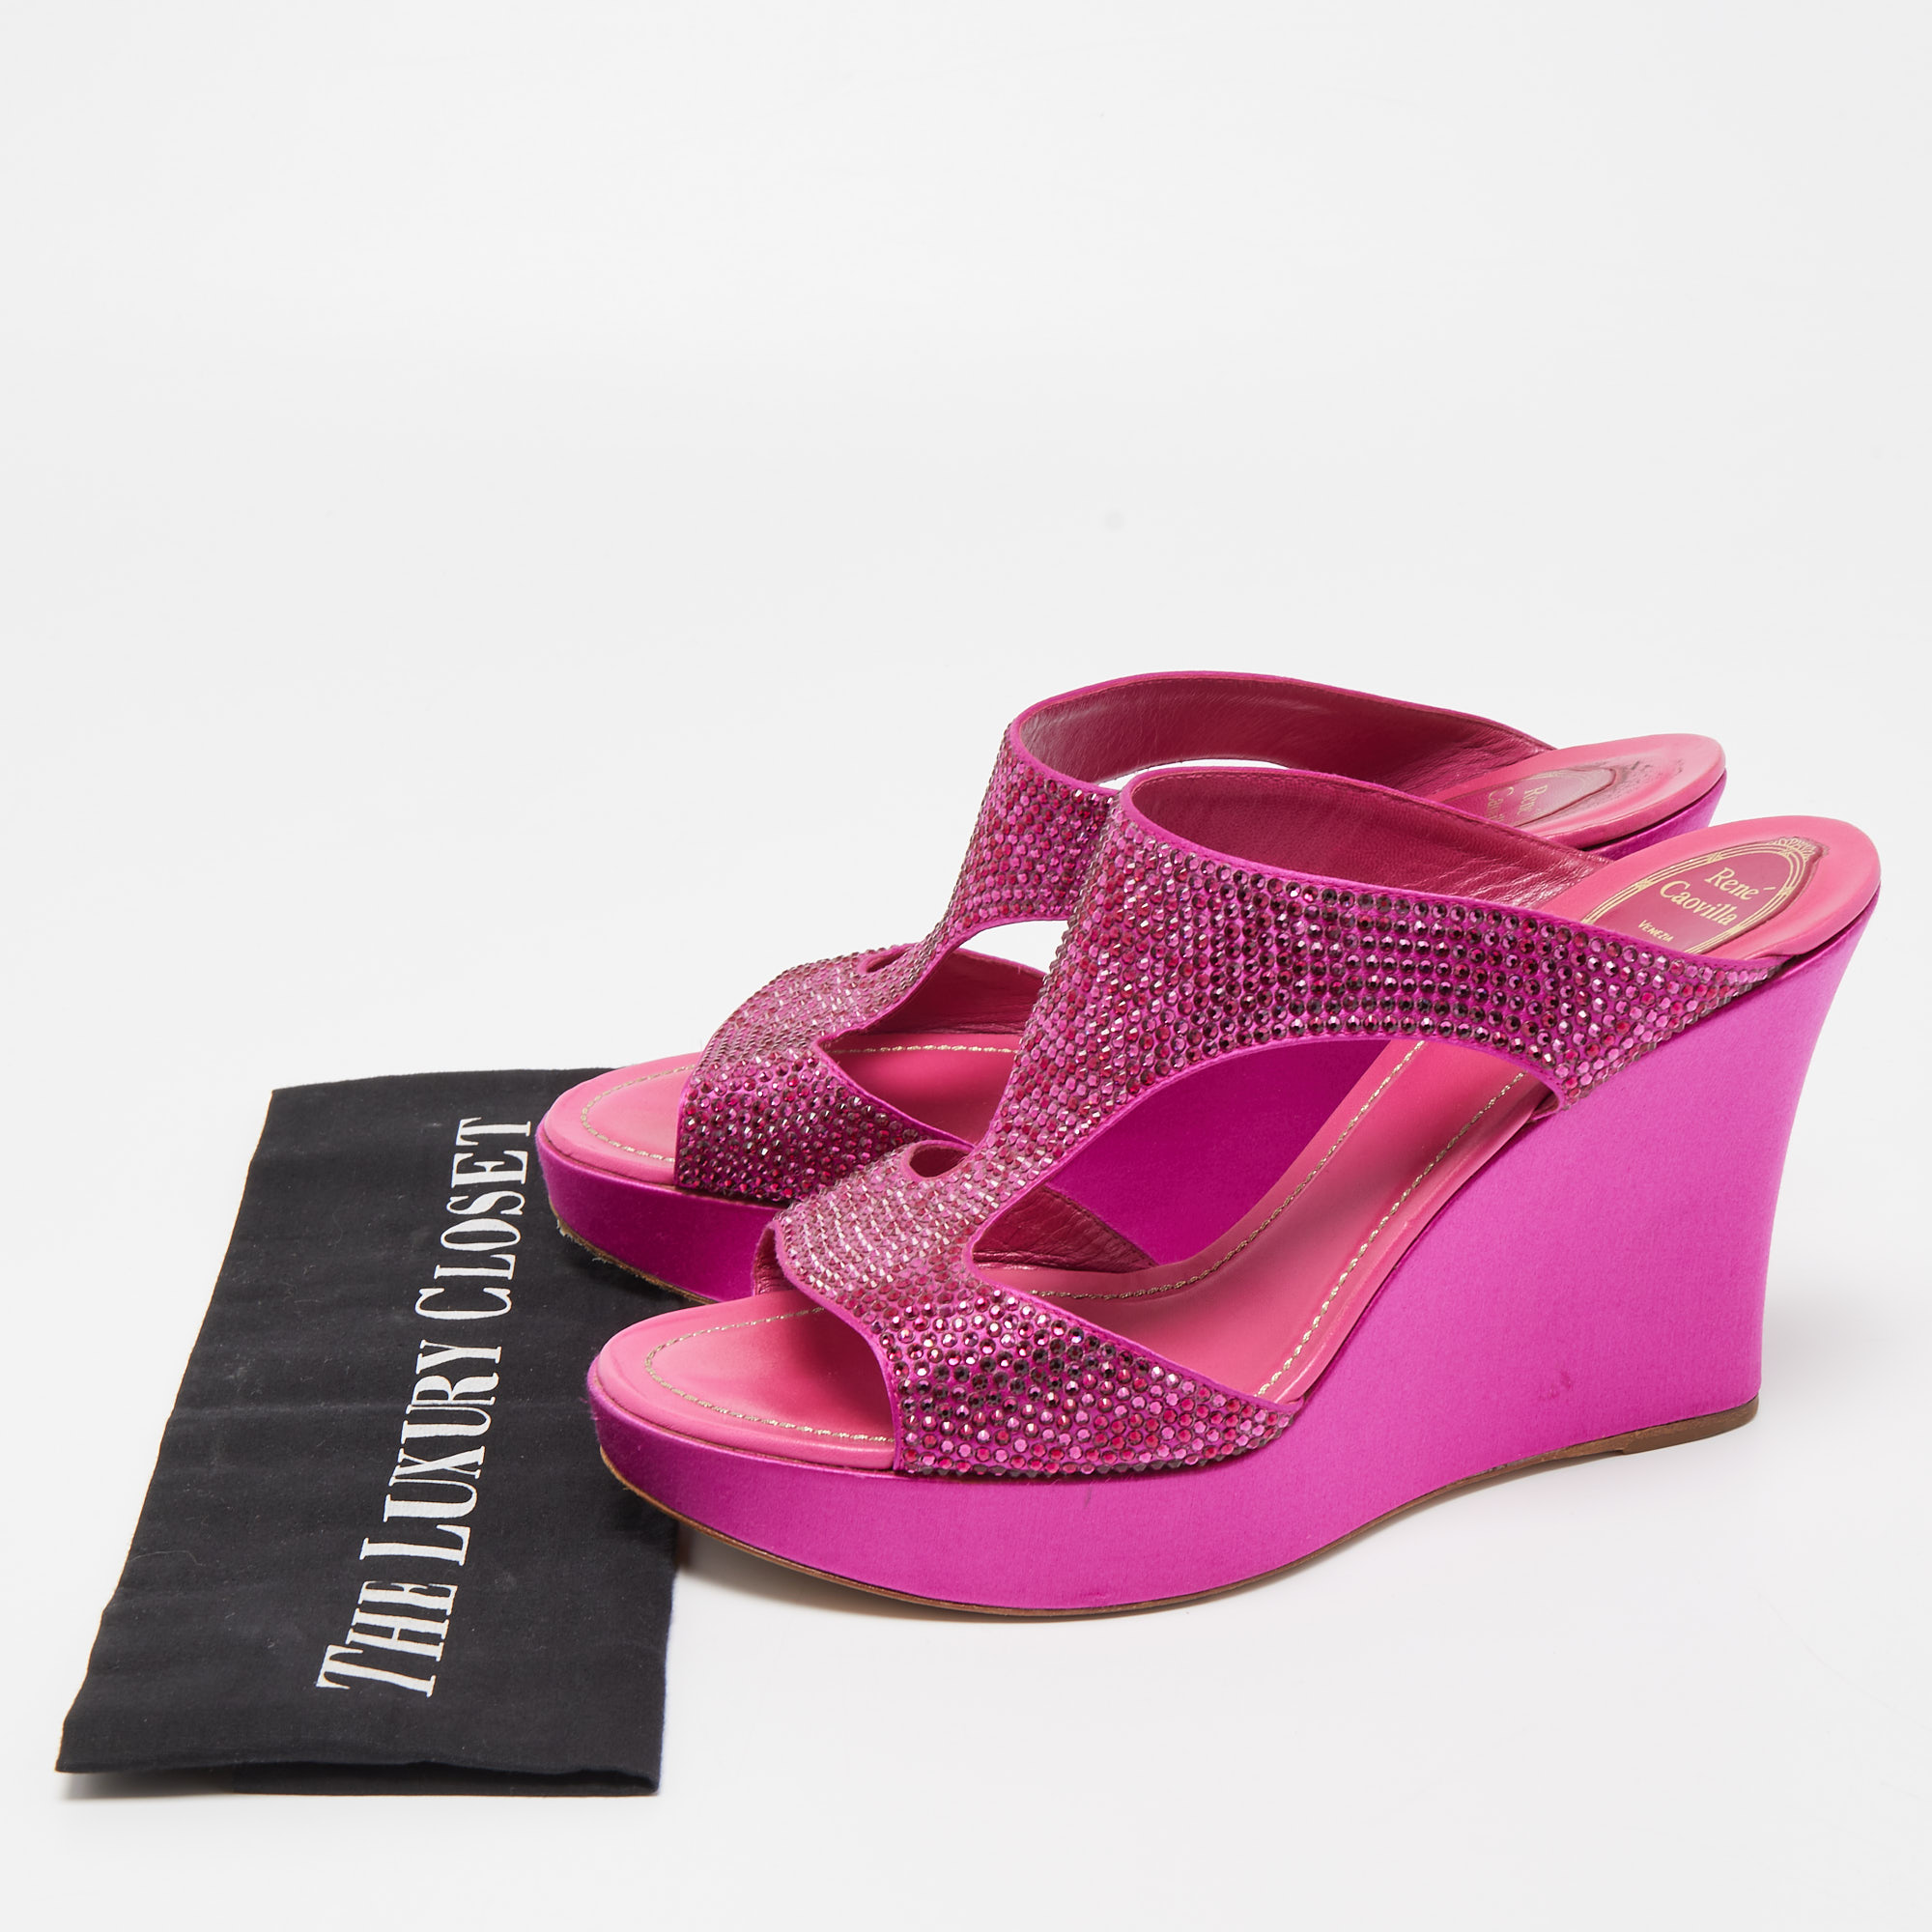 René Caovilla Pink Satin Crystal Embellished Wedge Slide Sandals Size 41